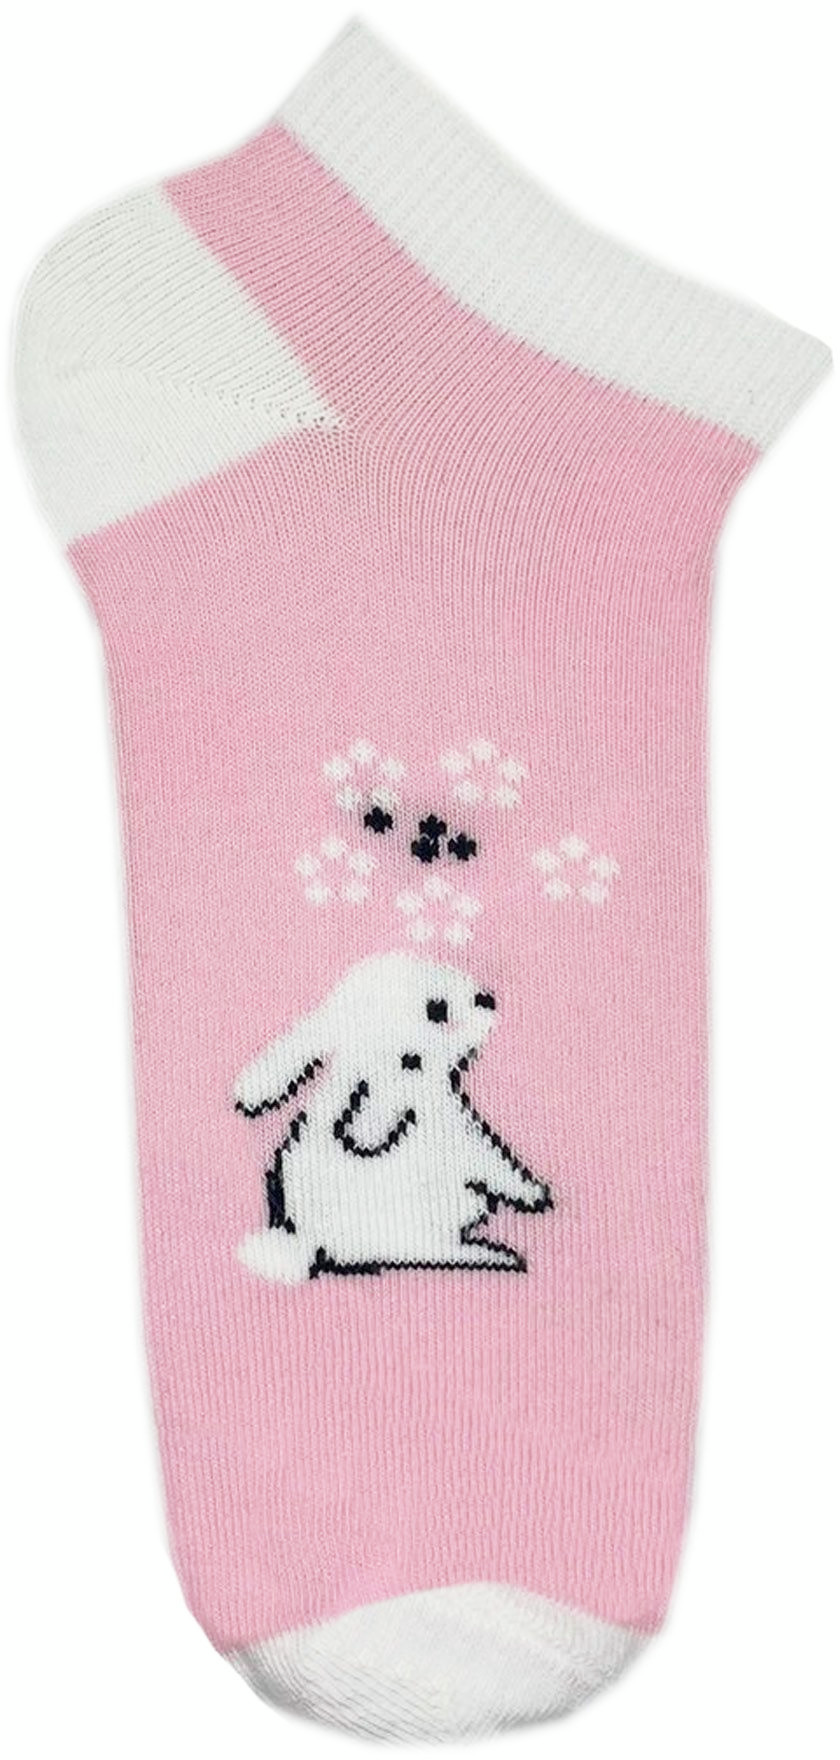 Набор носков Для девочек Premier Socks 22-24 5 пар розовые с принтом (4820163319728) фото 2